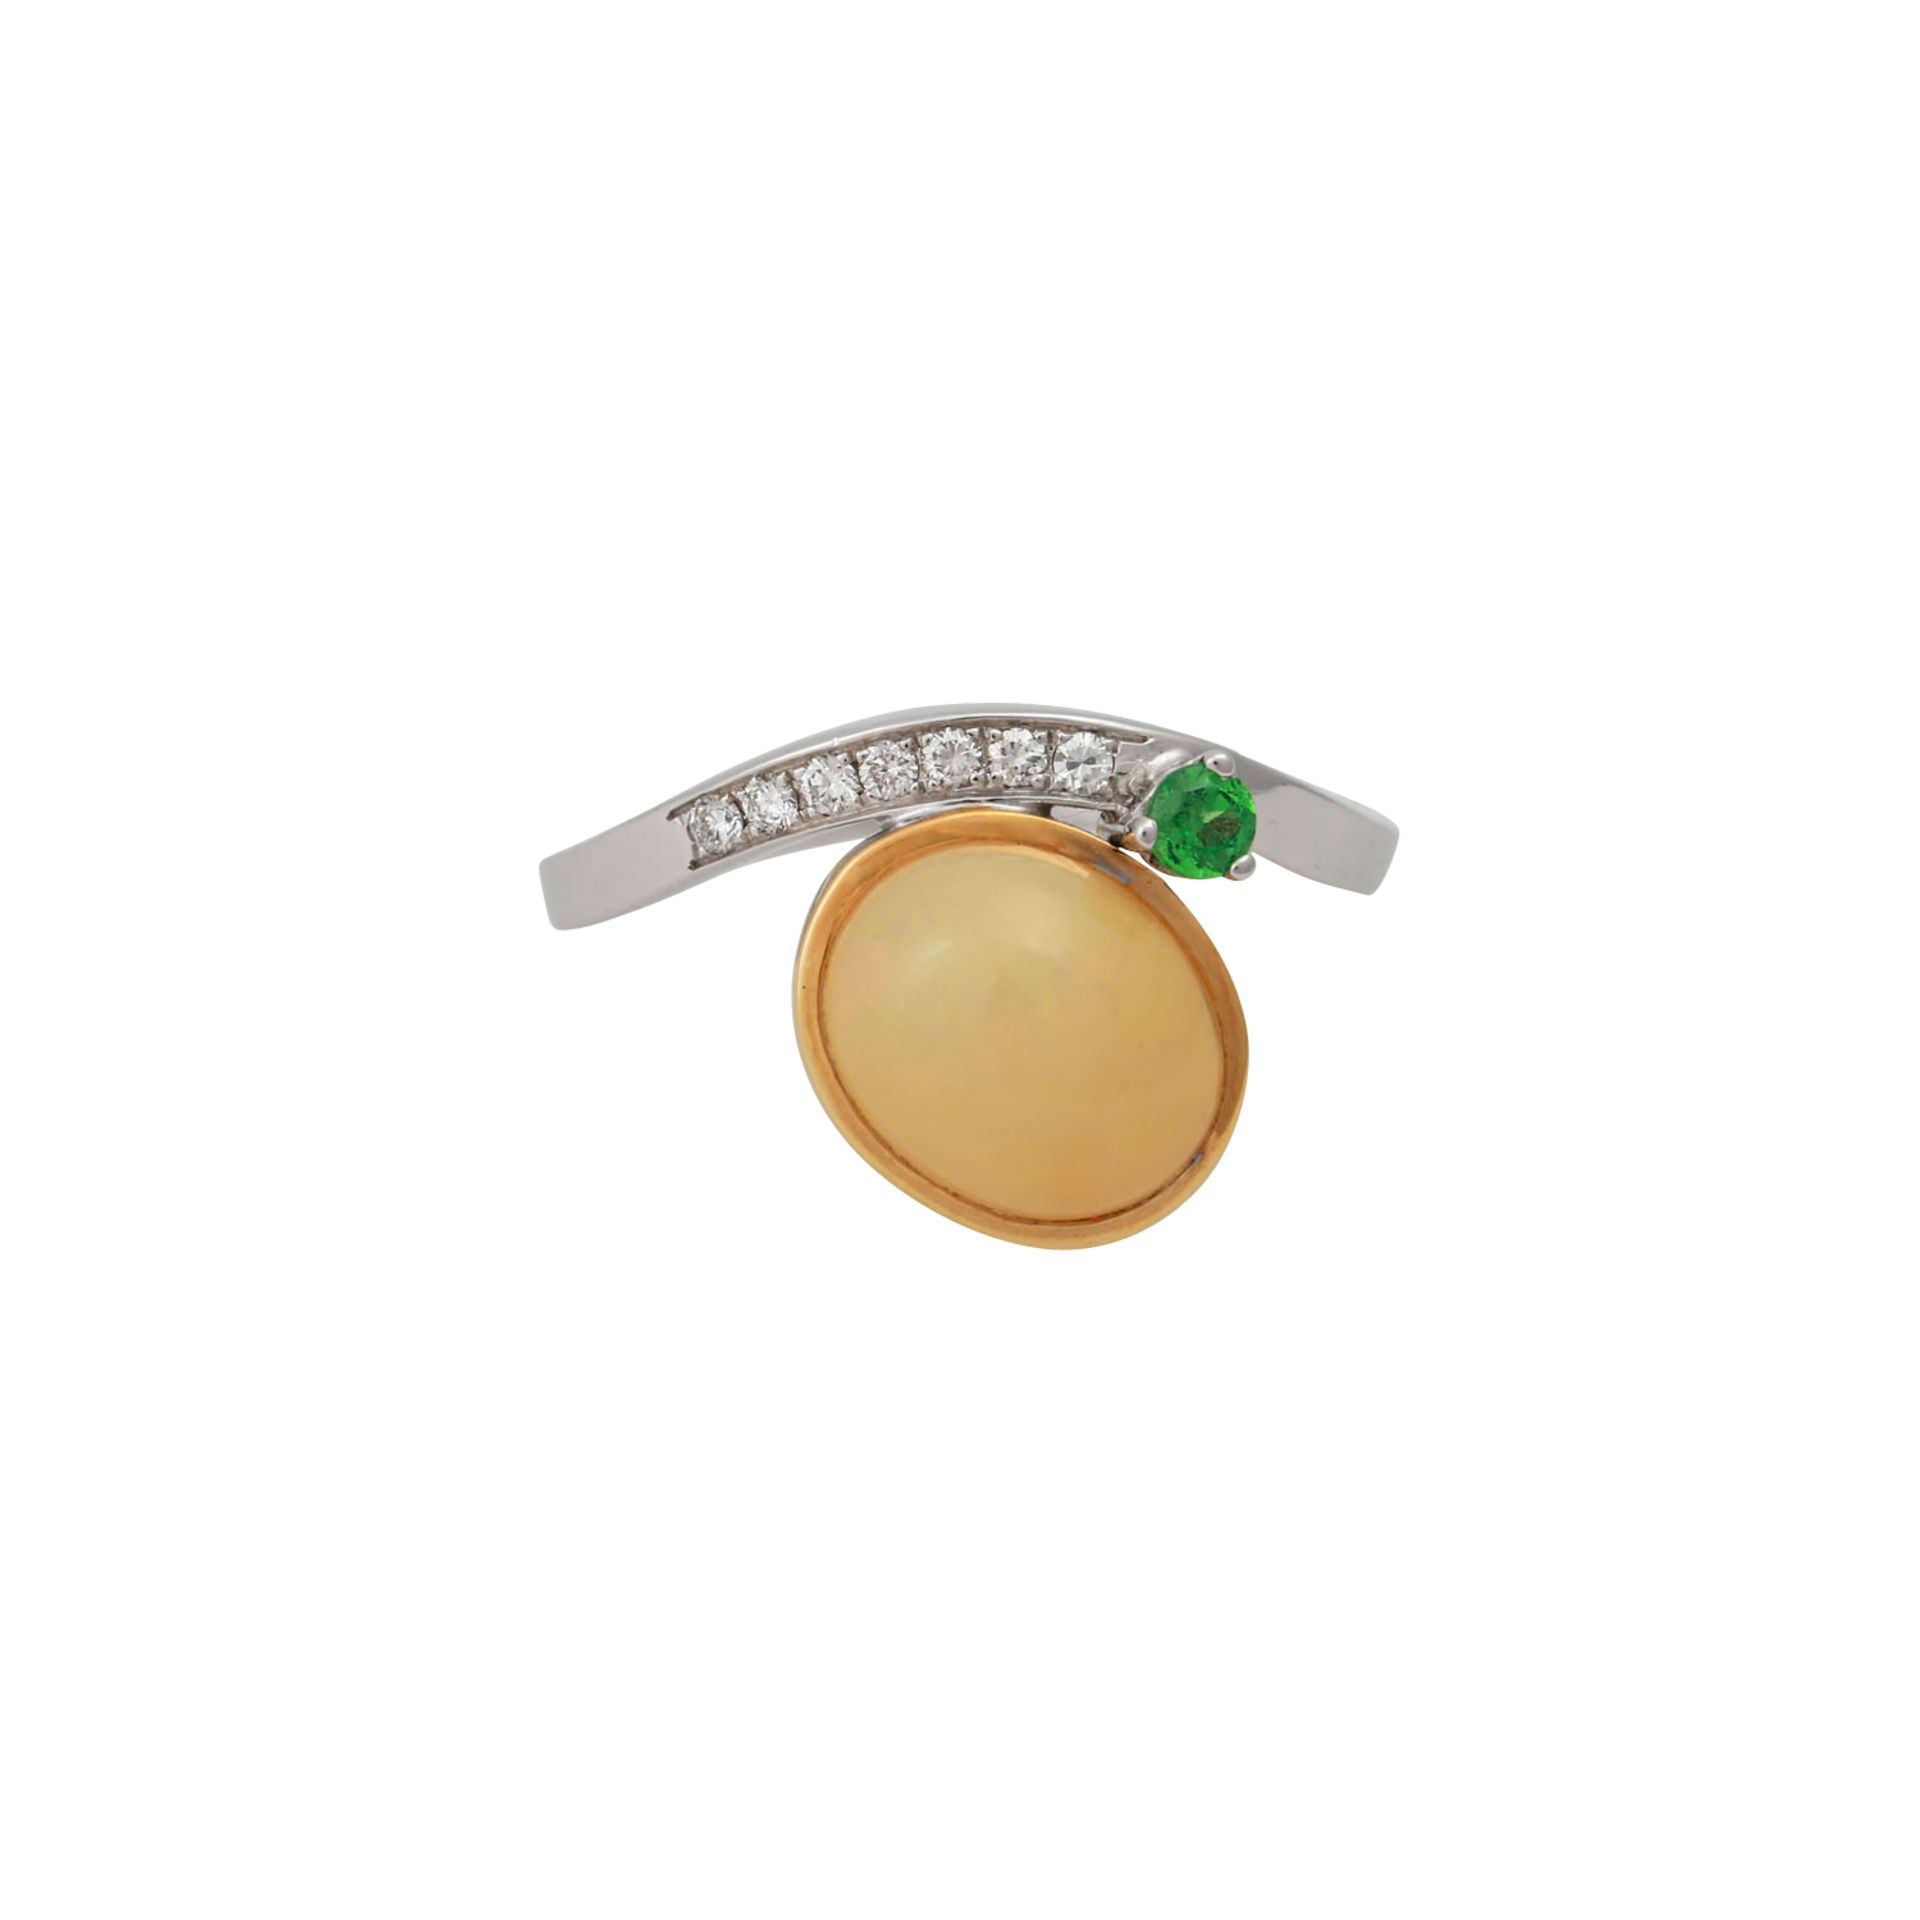 Ring mit ovalem Opal, 7 Brillanten, zus. ca. 0,18 ctund kl. grünem Schmuckstein, NP: 990 €, GG/WG - Bild 2 aus 4